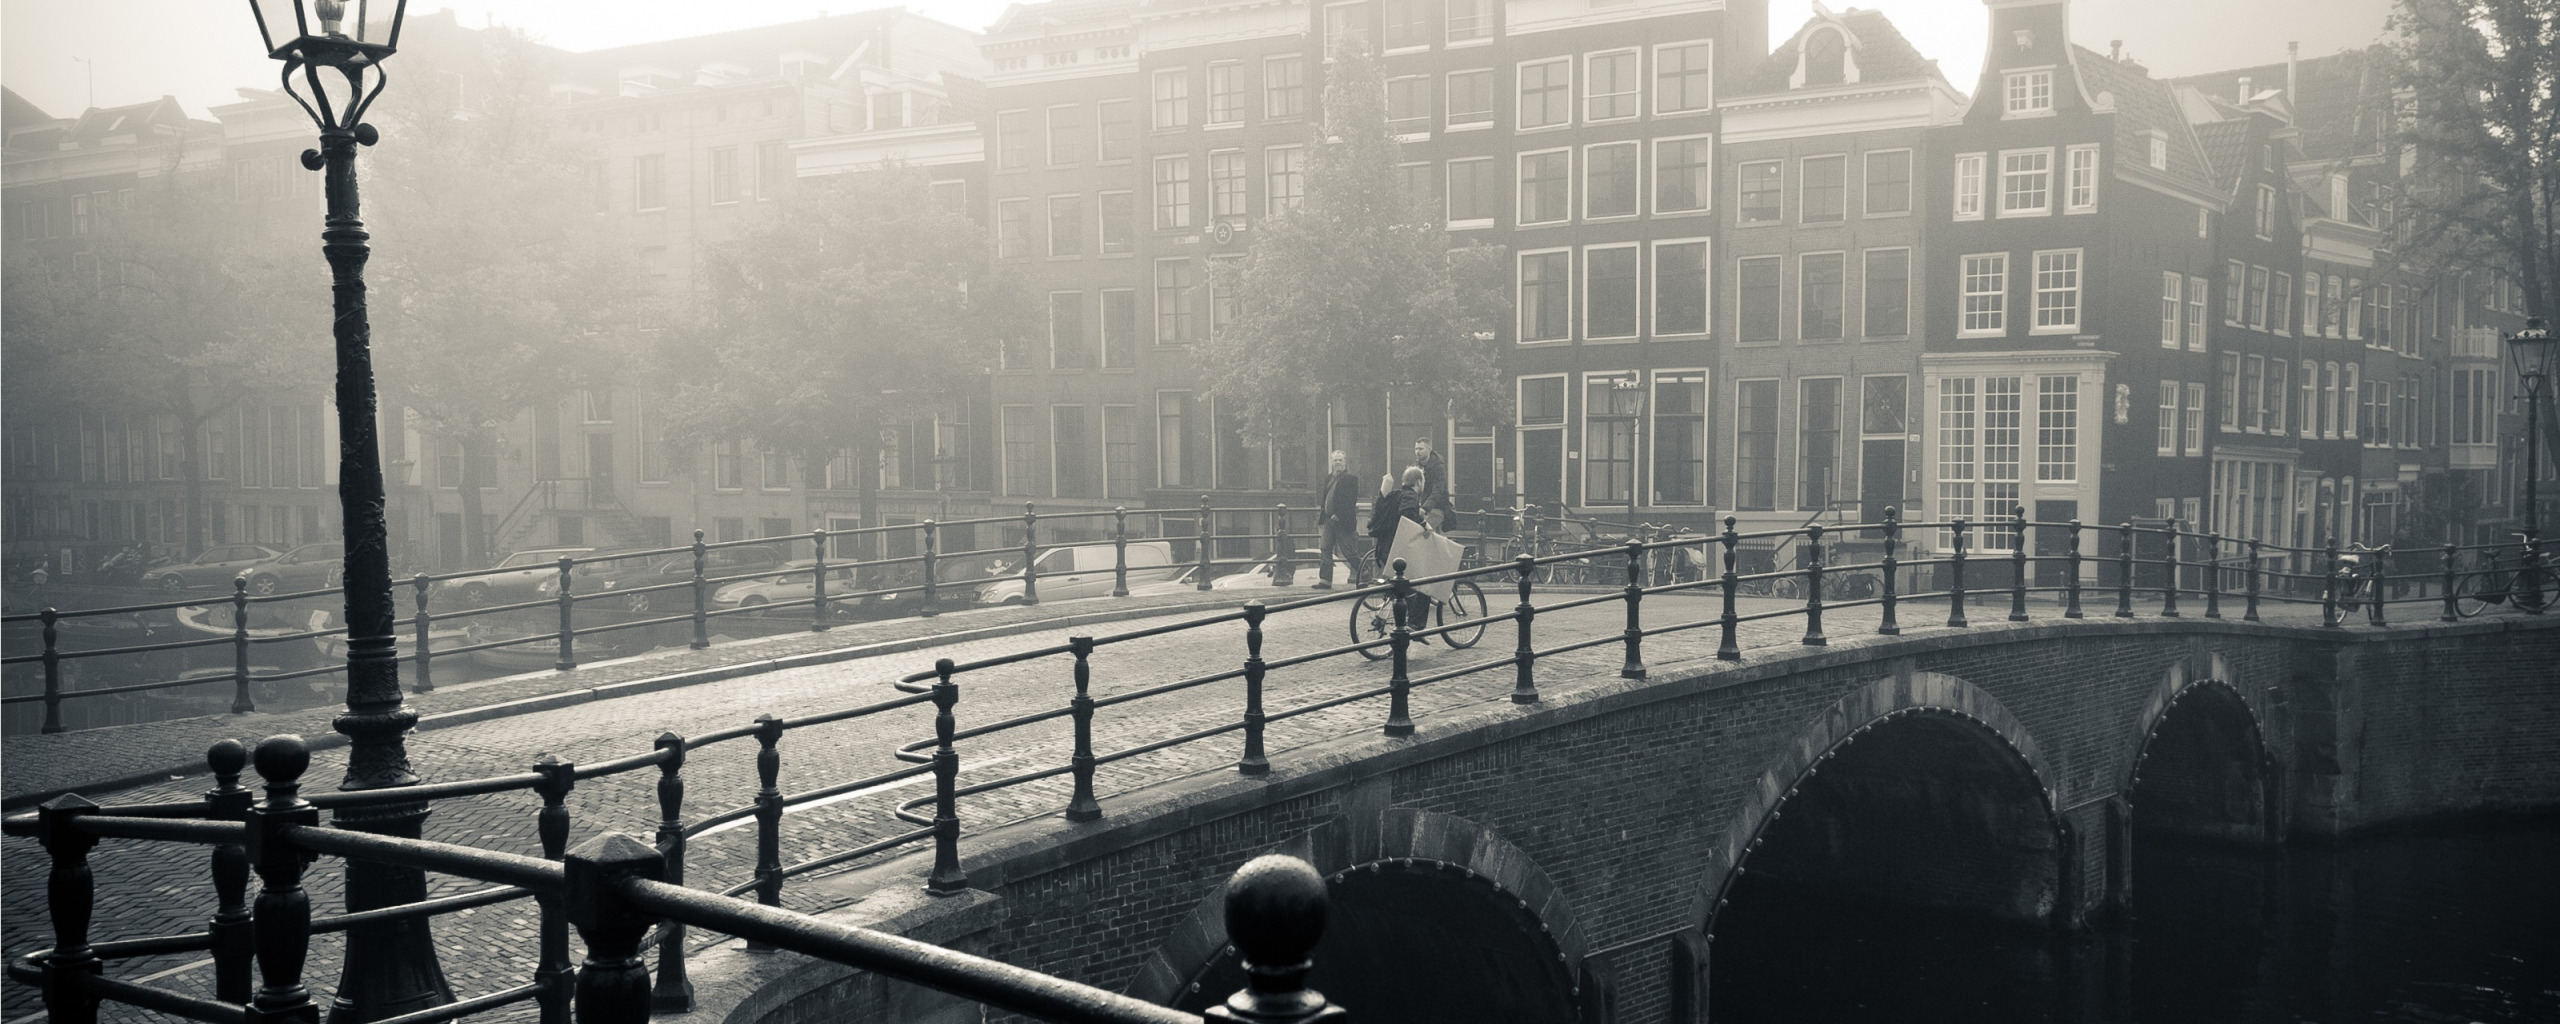 амстердам черно белые